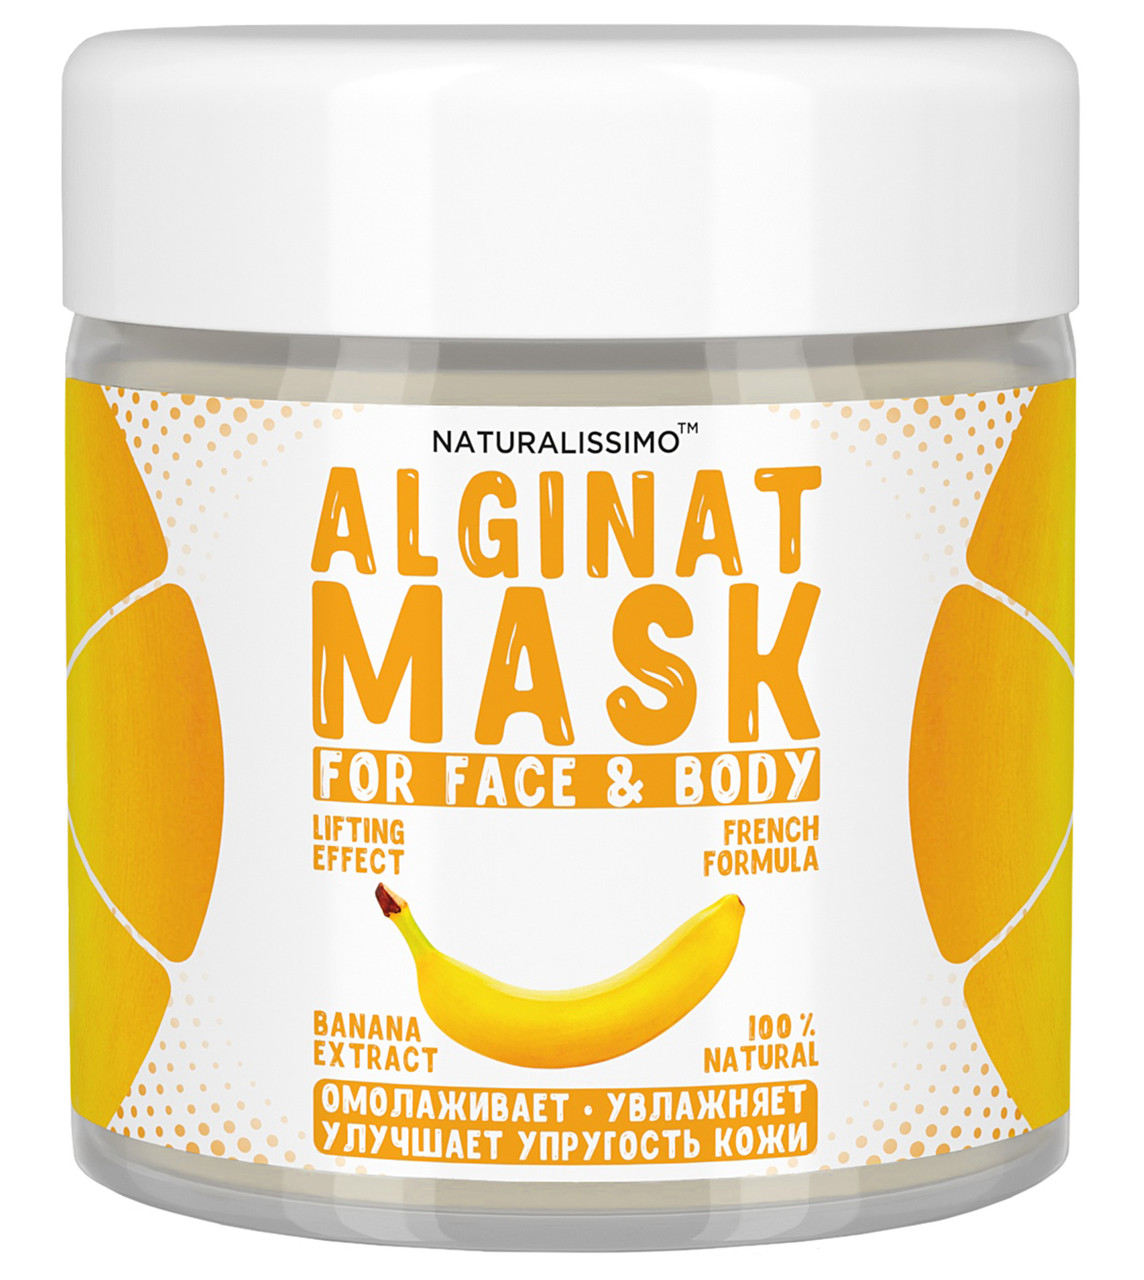 Альгінатна маска Зволожує шкіру, покращує пружність і еластичність, з бананом, 50 г